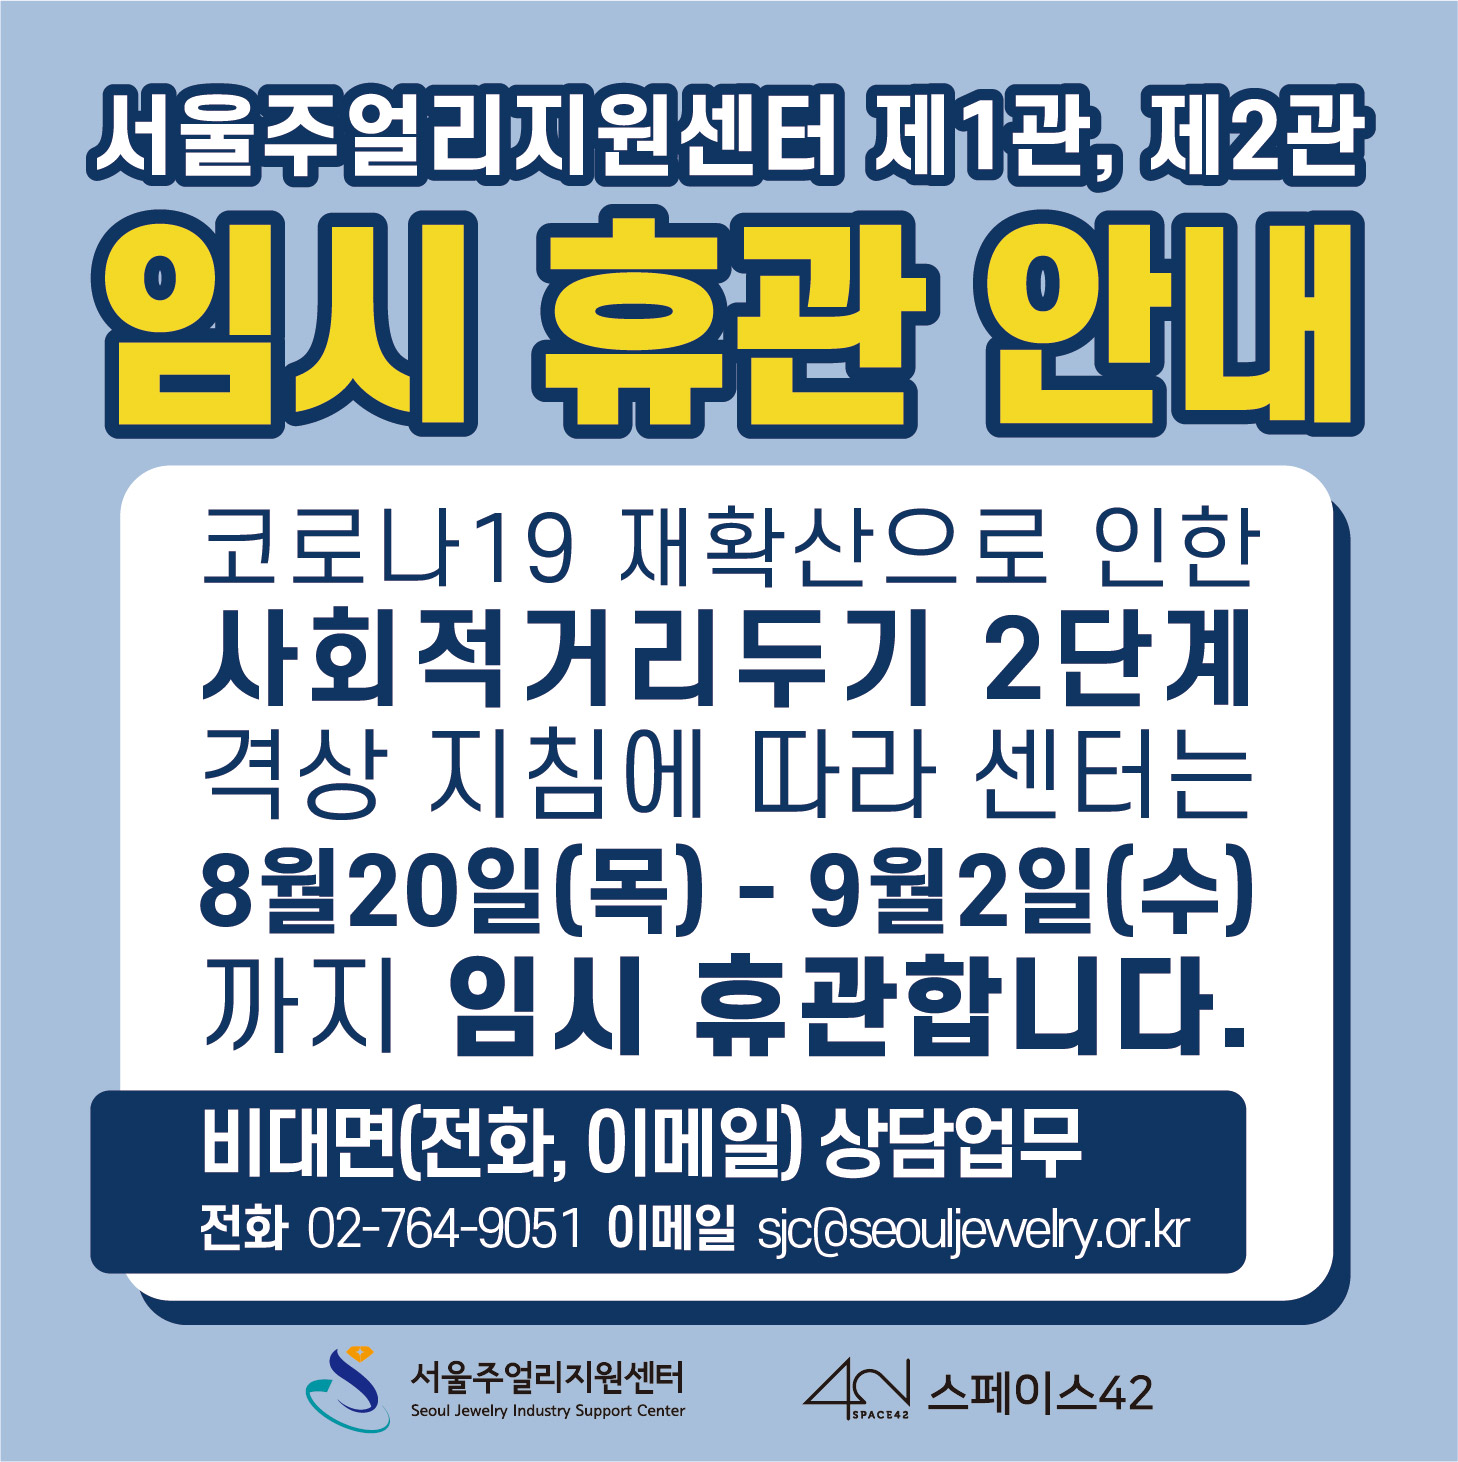 서울주얼리지원센터 제1관, 제2관 임시 휴관 안내